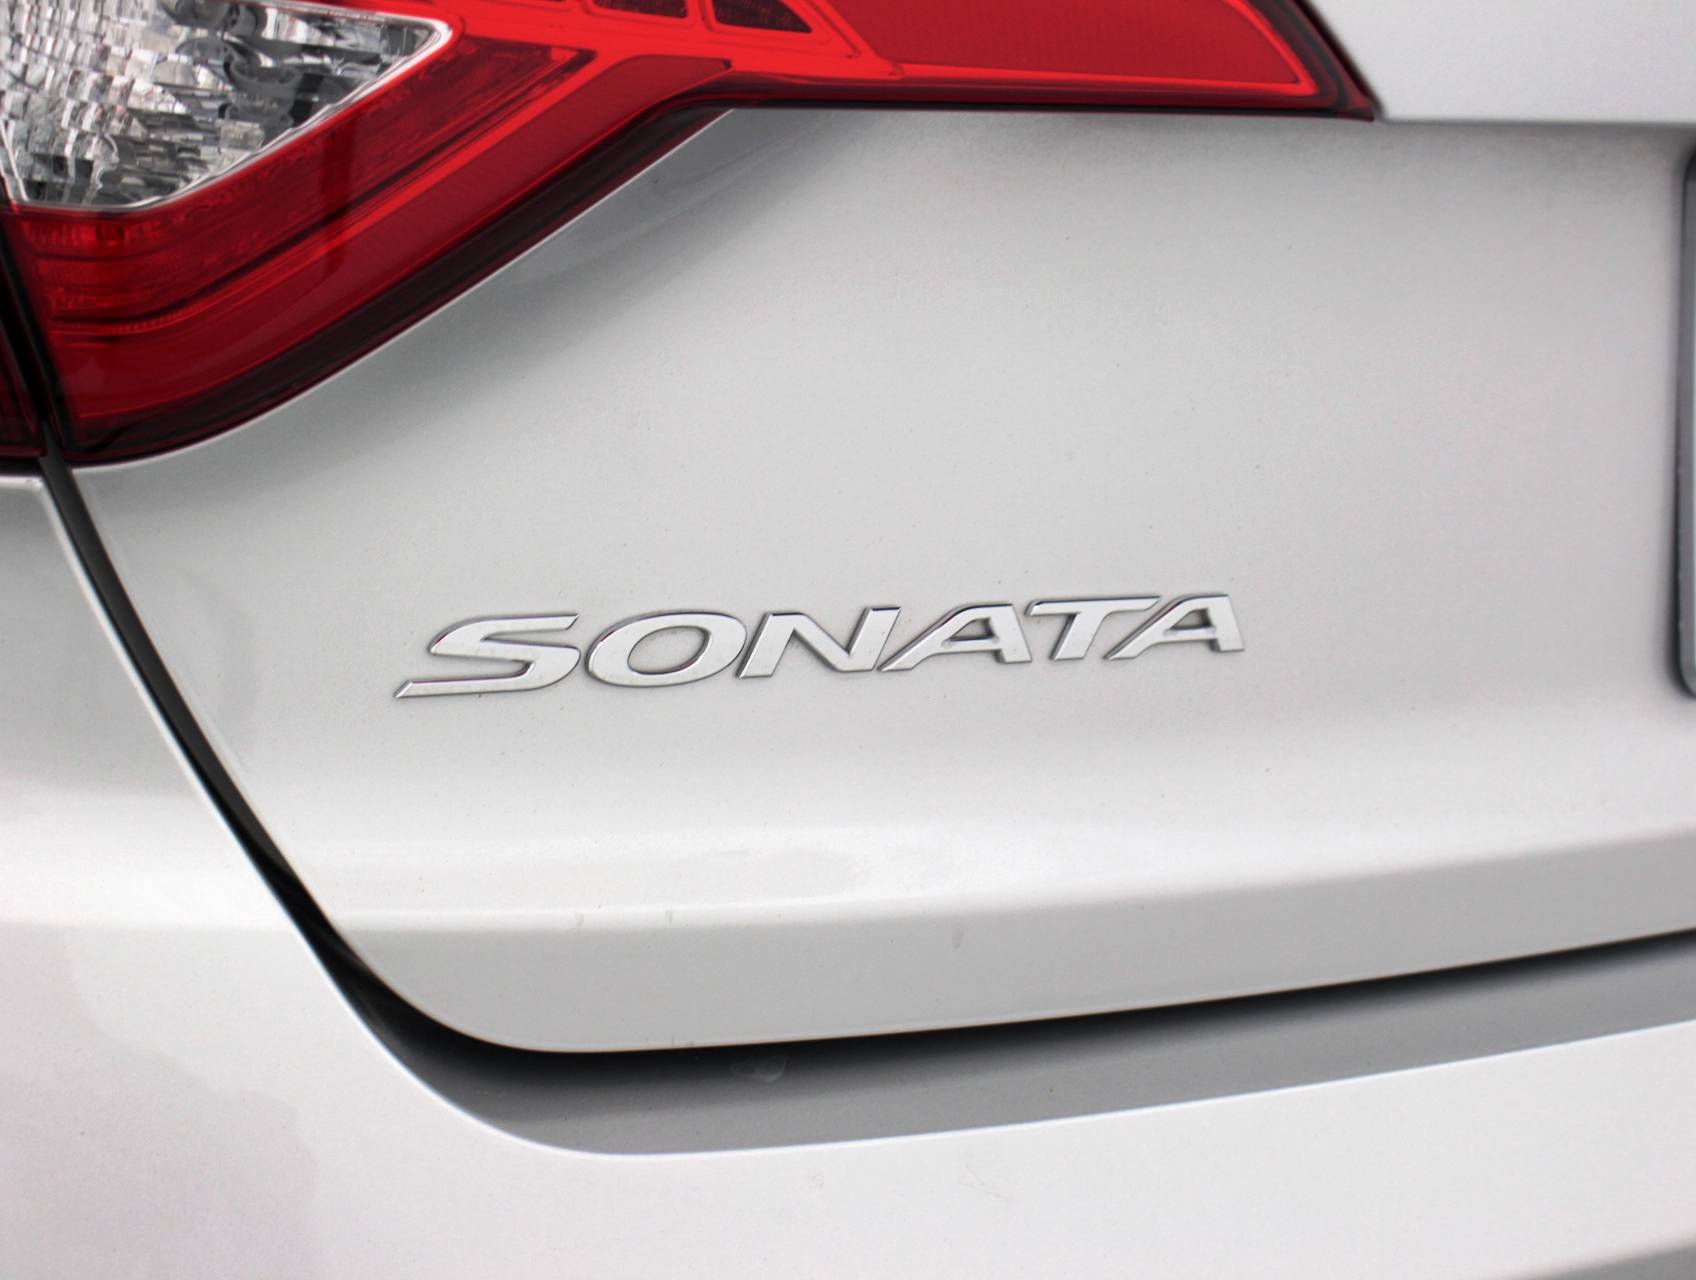 Florida Fine Cars - Used HYUNDAI SONATA 2015 MIAMI Limited